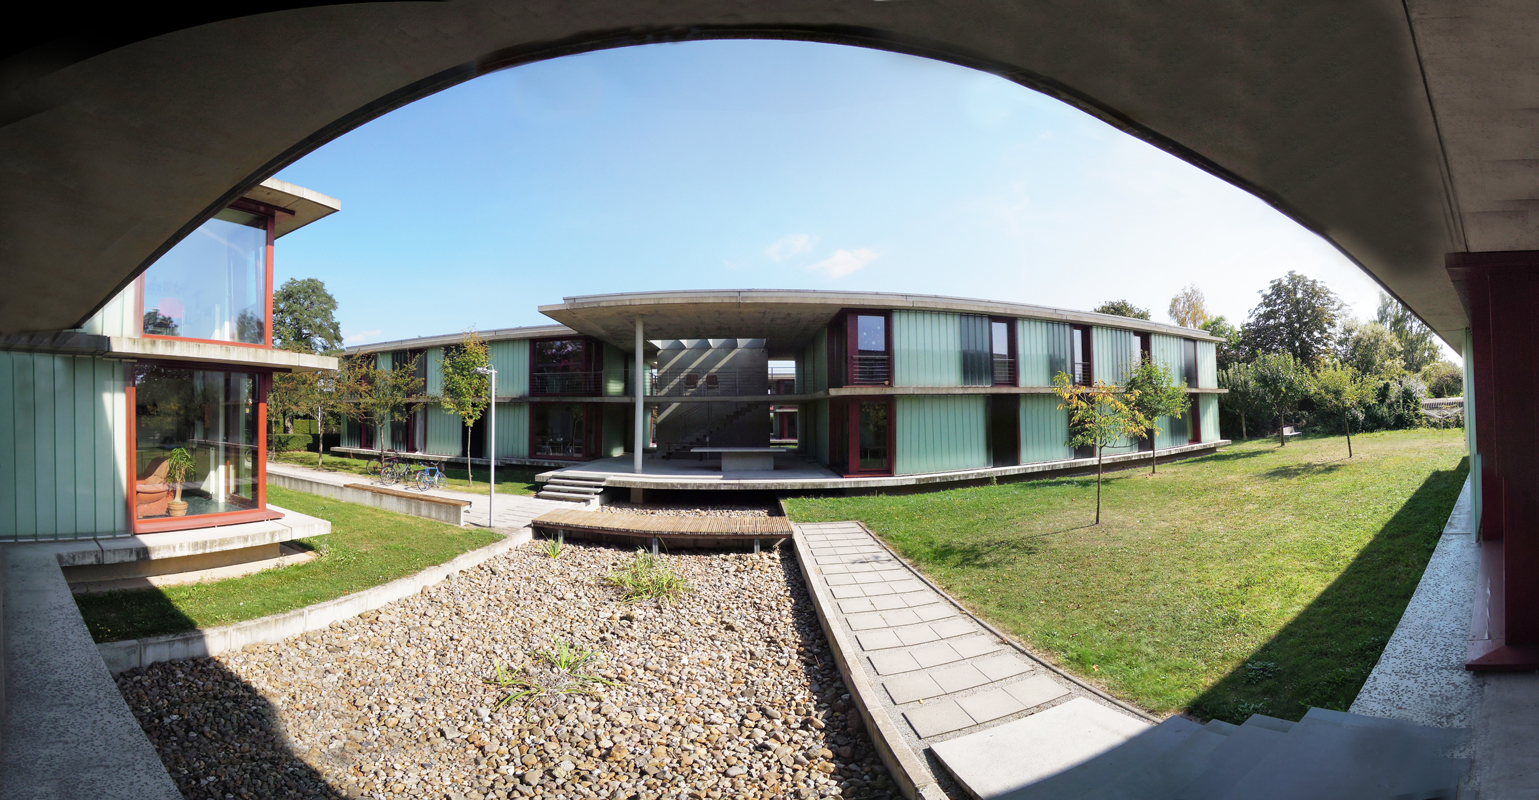 Ein Bild vom Studentenwohnheim Halle: ein modernes, flaches Gebäude zum großen Teil aus Glas hat nur zwei Etagen.